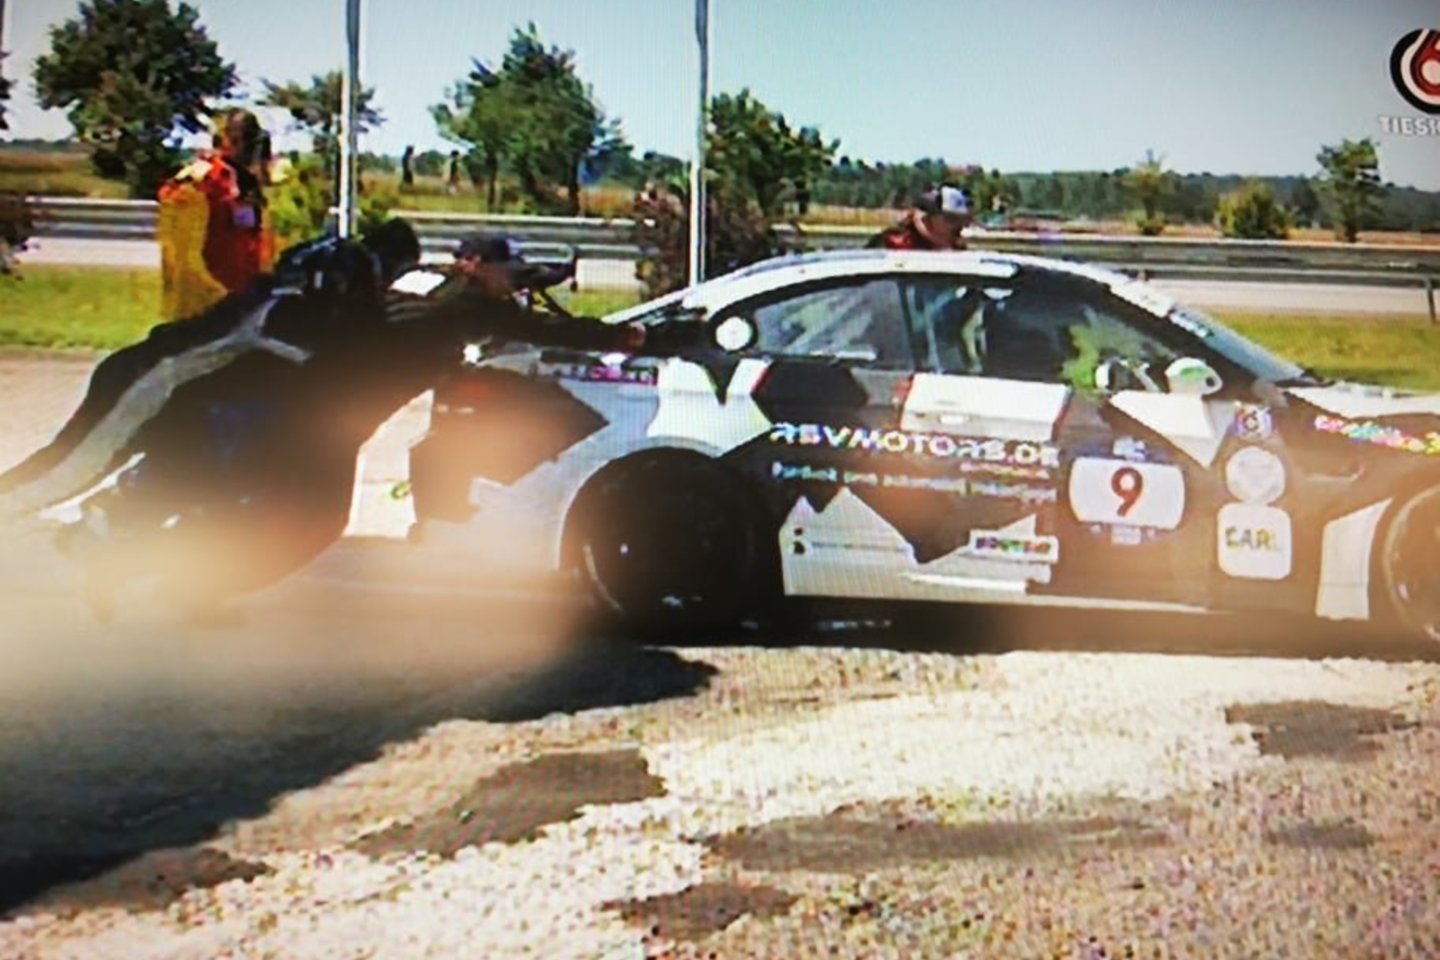  Lenktynėse Palangoje vienas iš automobilių susidūrė su bėdomis degalinėje.<br>Stop kadras iš lenktynių transliacijos 